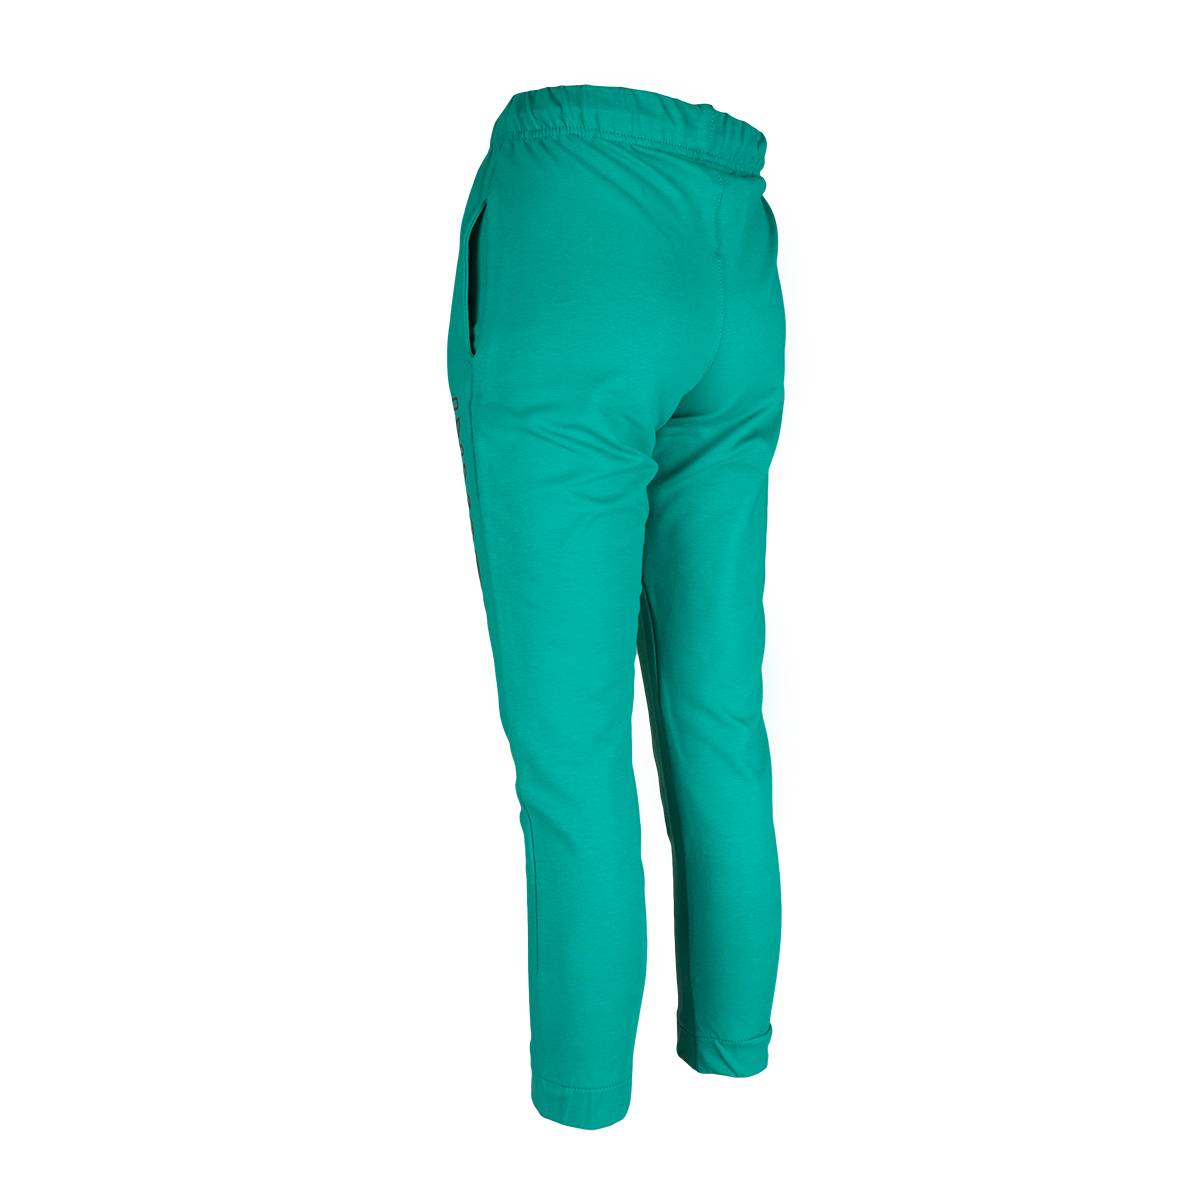 Spodnie dresowe dla chłopca, kolor zielony, aplikacja na nogawce INVASION, Tup Tup